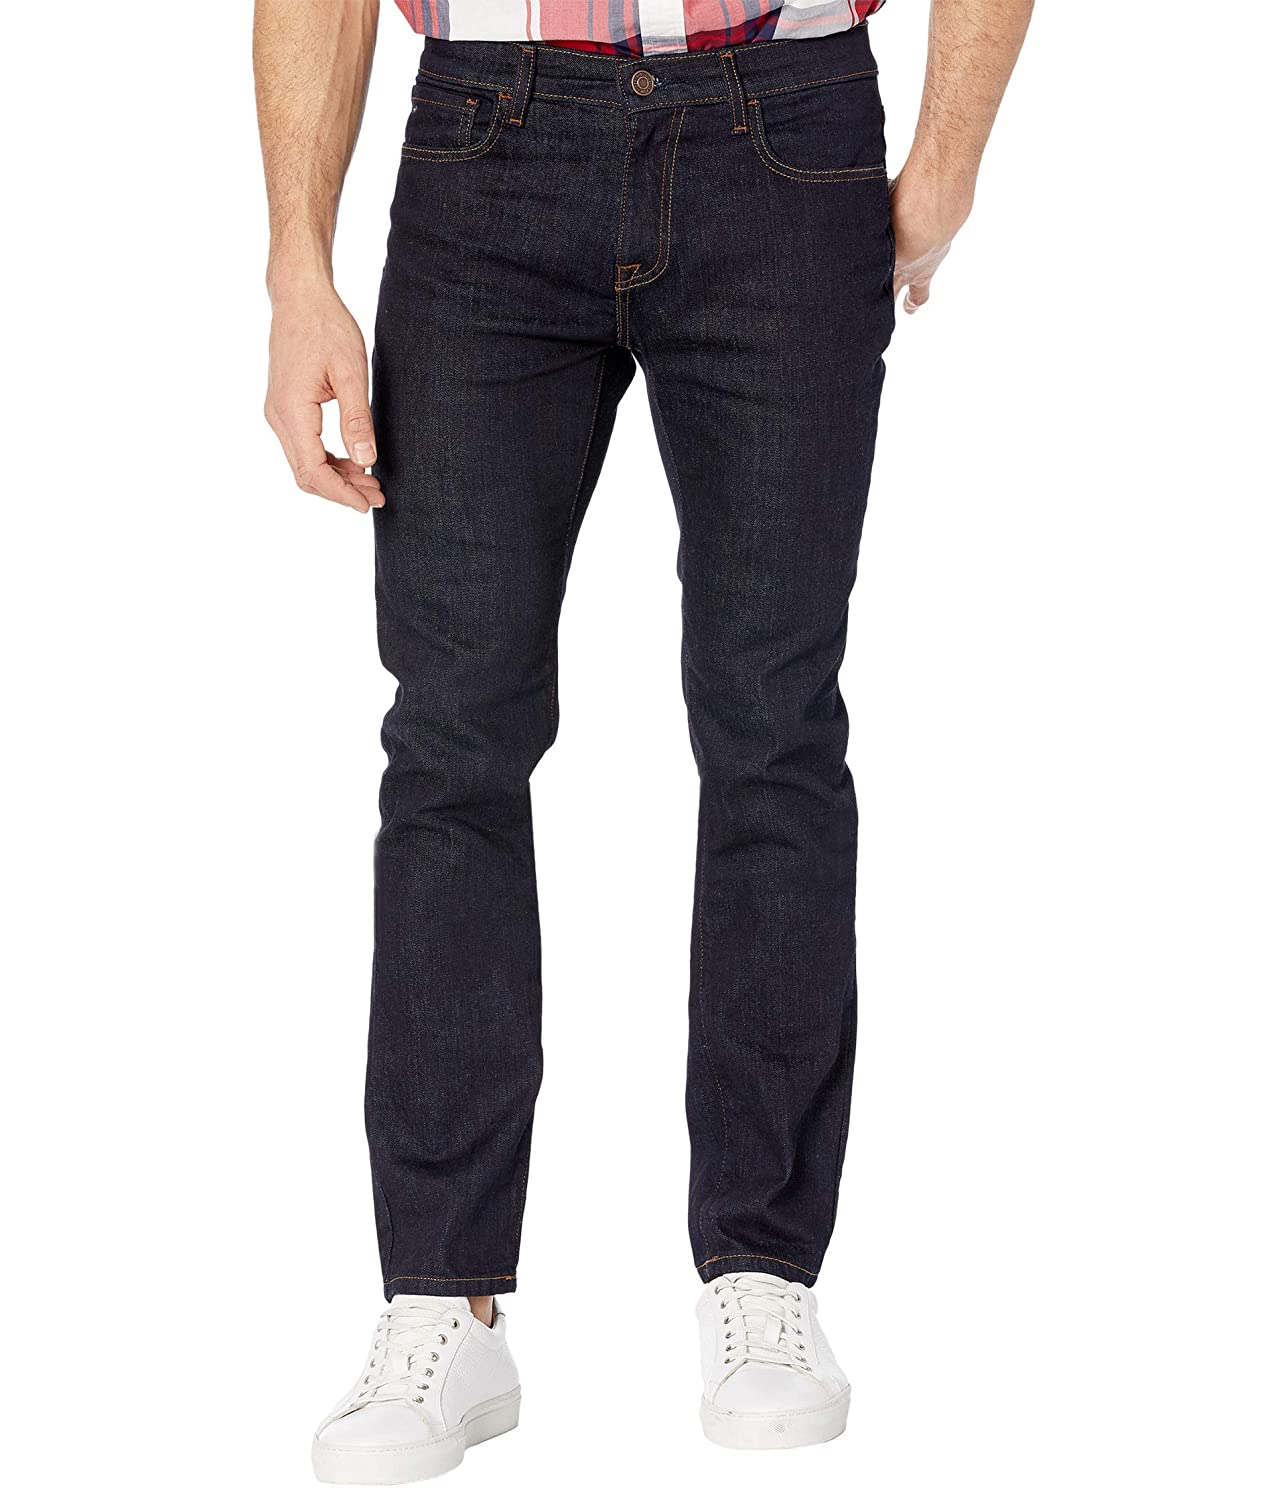 ג'ינס לגבר דגם Slim Fit Stretch מידה 38 צבע כחול Tommy Hilfiger - יבואן מקביל